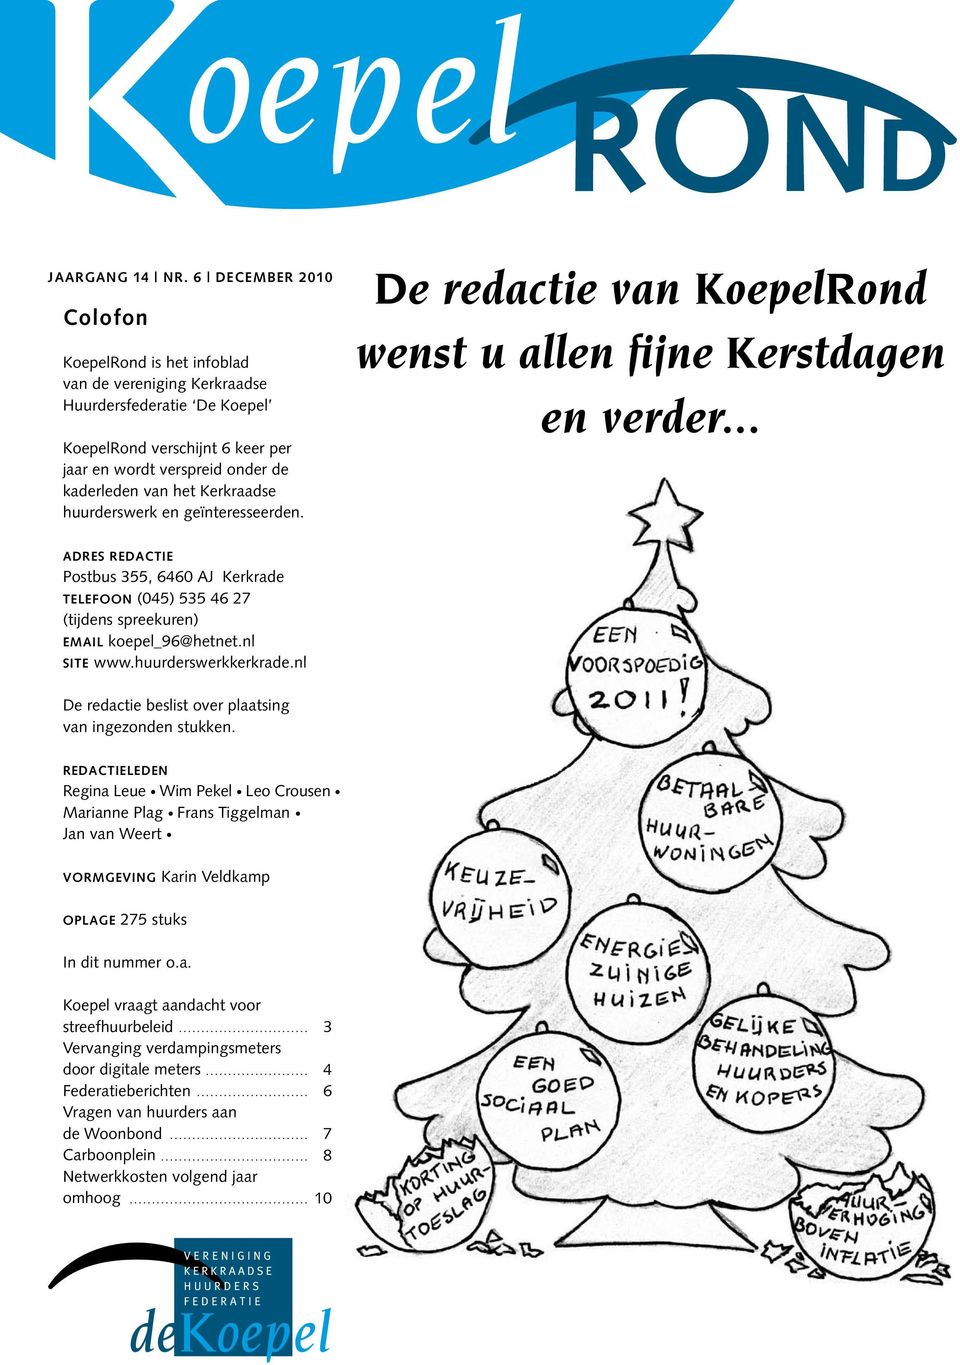 Kerkraadse huurderswerk en geïnteresseerden. De redactie van KoepelRond wenst u allen fijne Kerstdagen en verder.